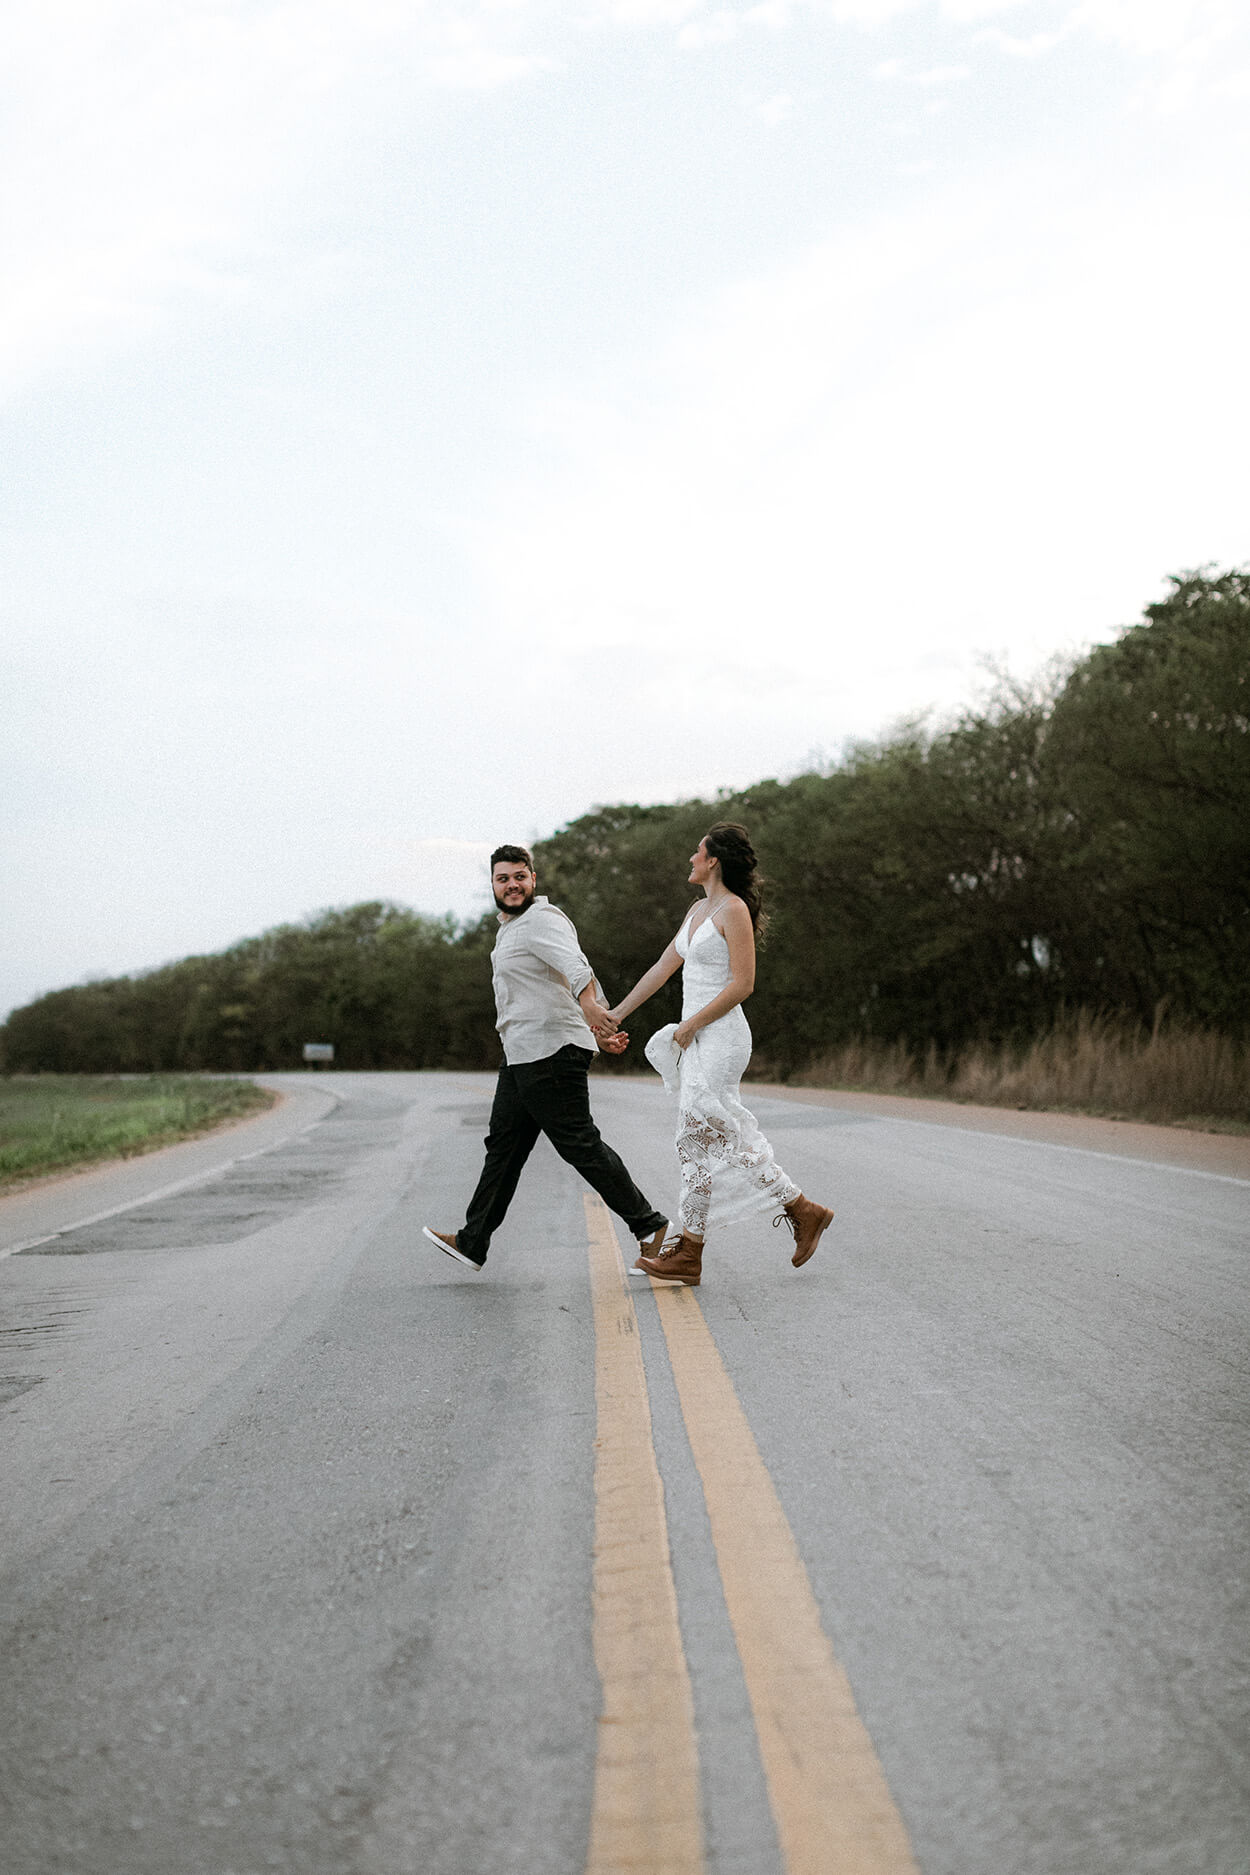 Casal de mãos dadas atravessando a estrada em um dia nublado